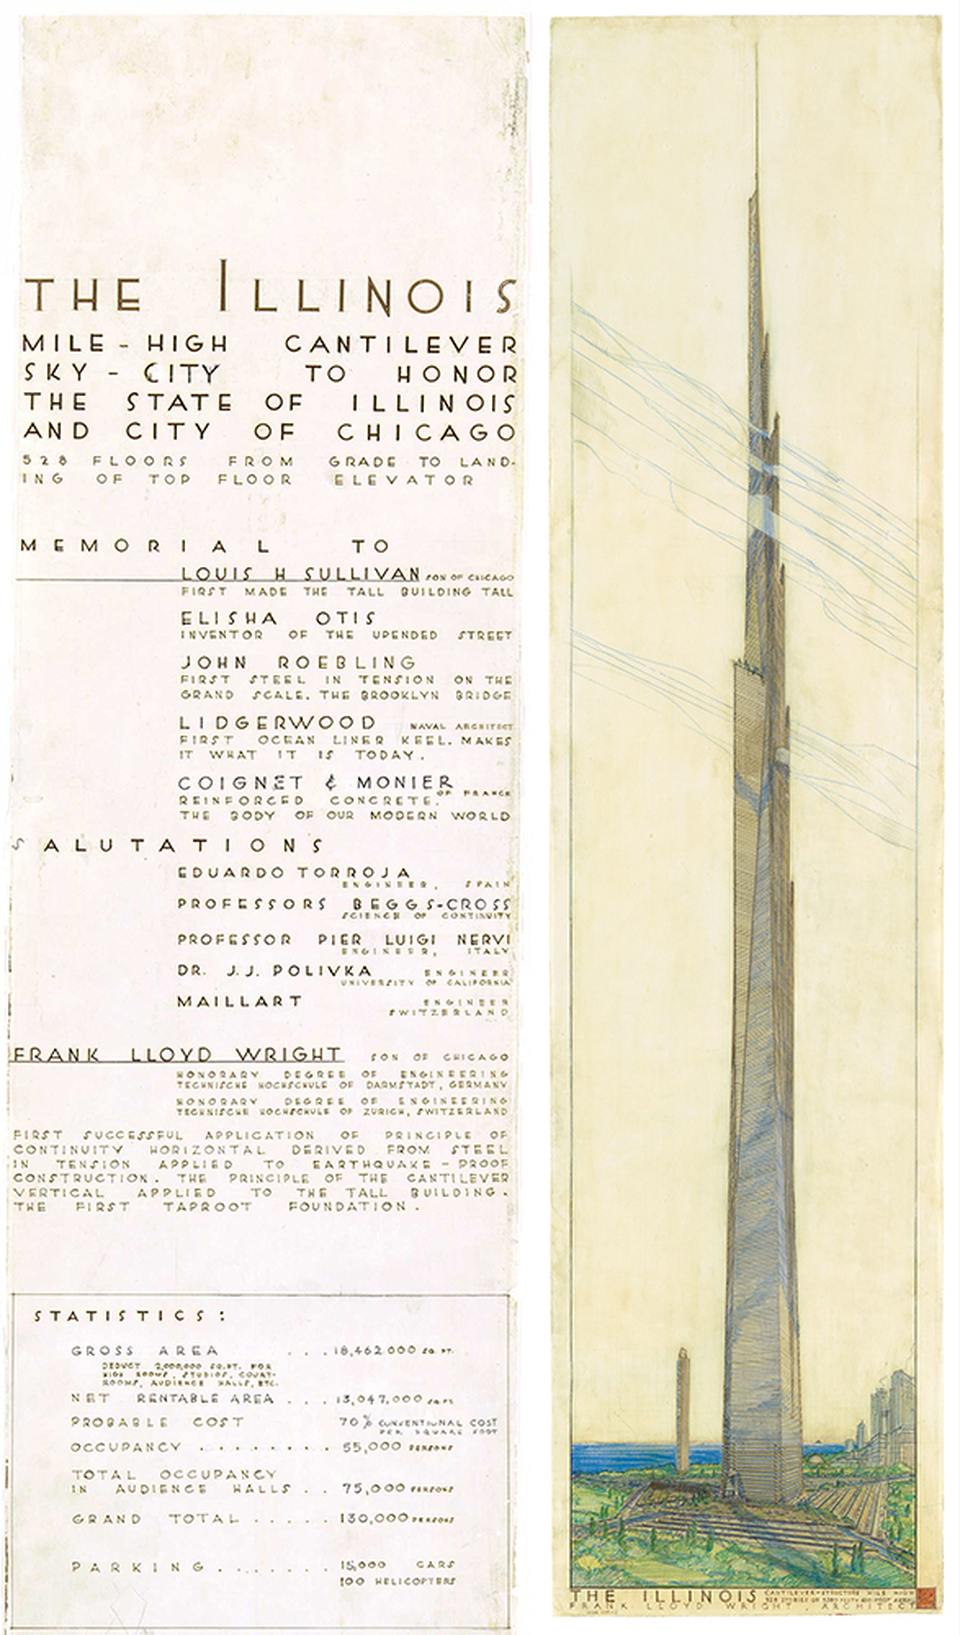 The Mile-High Illinois (1956): Frank Lloyd Wright posztere az „egymérföldes Illinois”-ról, , ahol rajza mellett Chicago építészei előtt is tiszteleg és magát Chicago fiának nevezi. - forrás: artbook.com